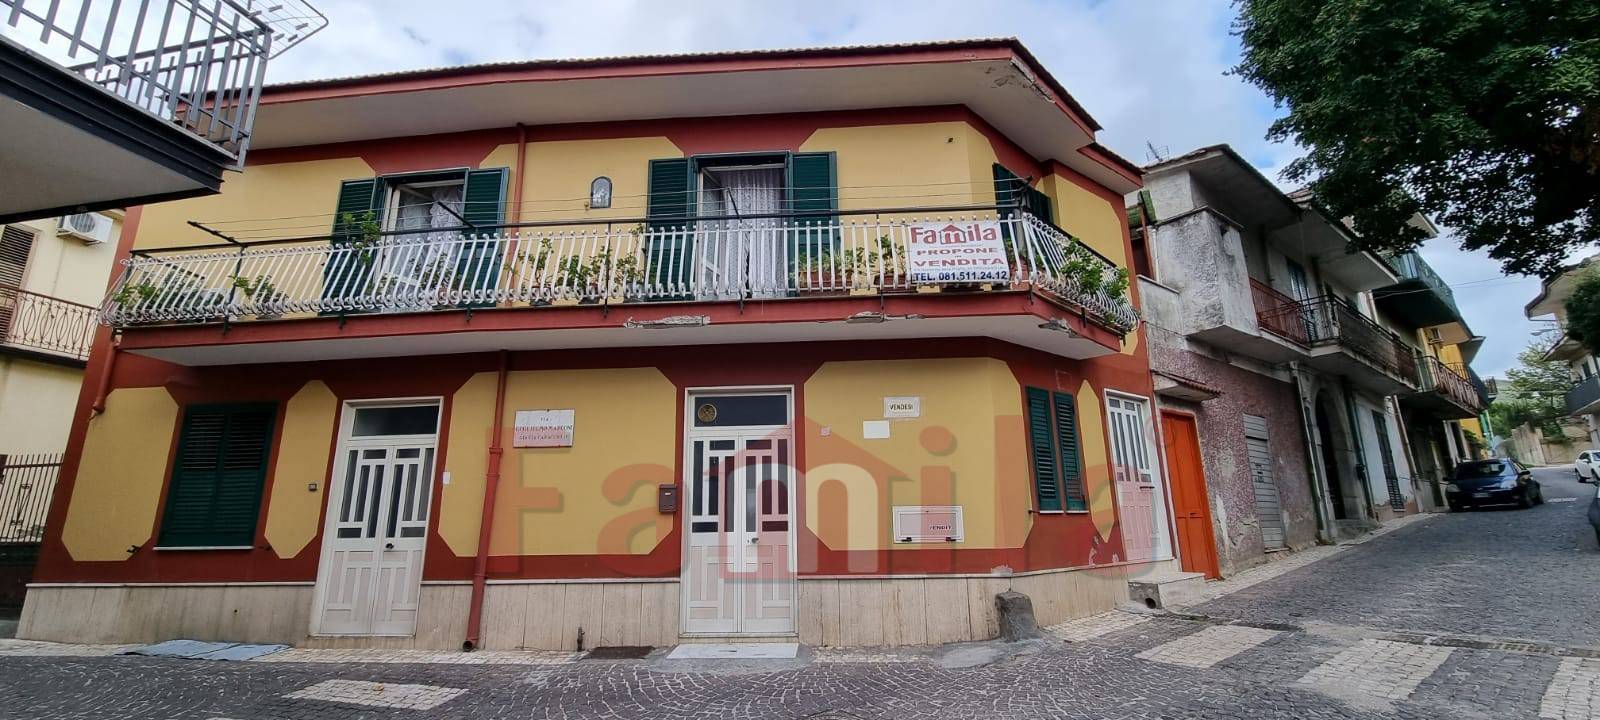 Soluzione Indipendente in vendita a Sirignano, 4 locali, prezzo € 85.000 | CambioCasa.it